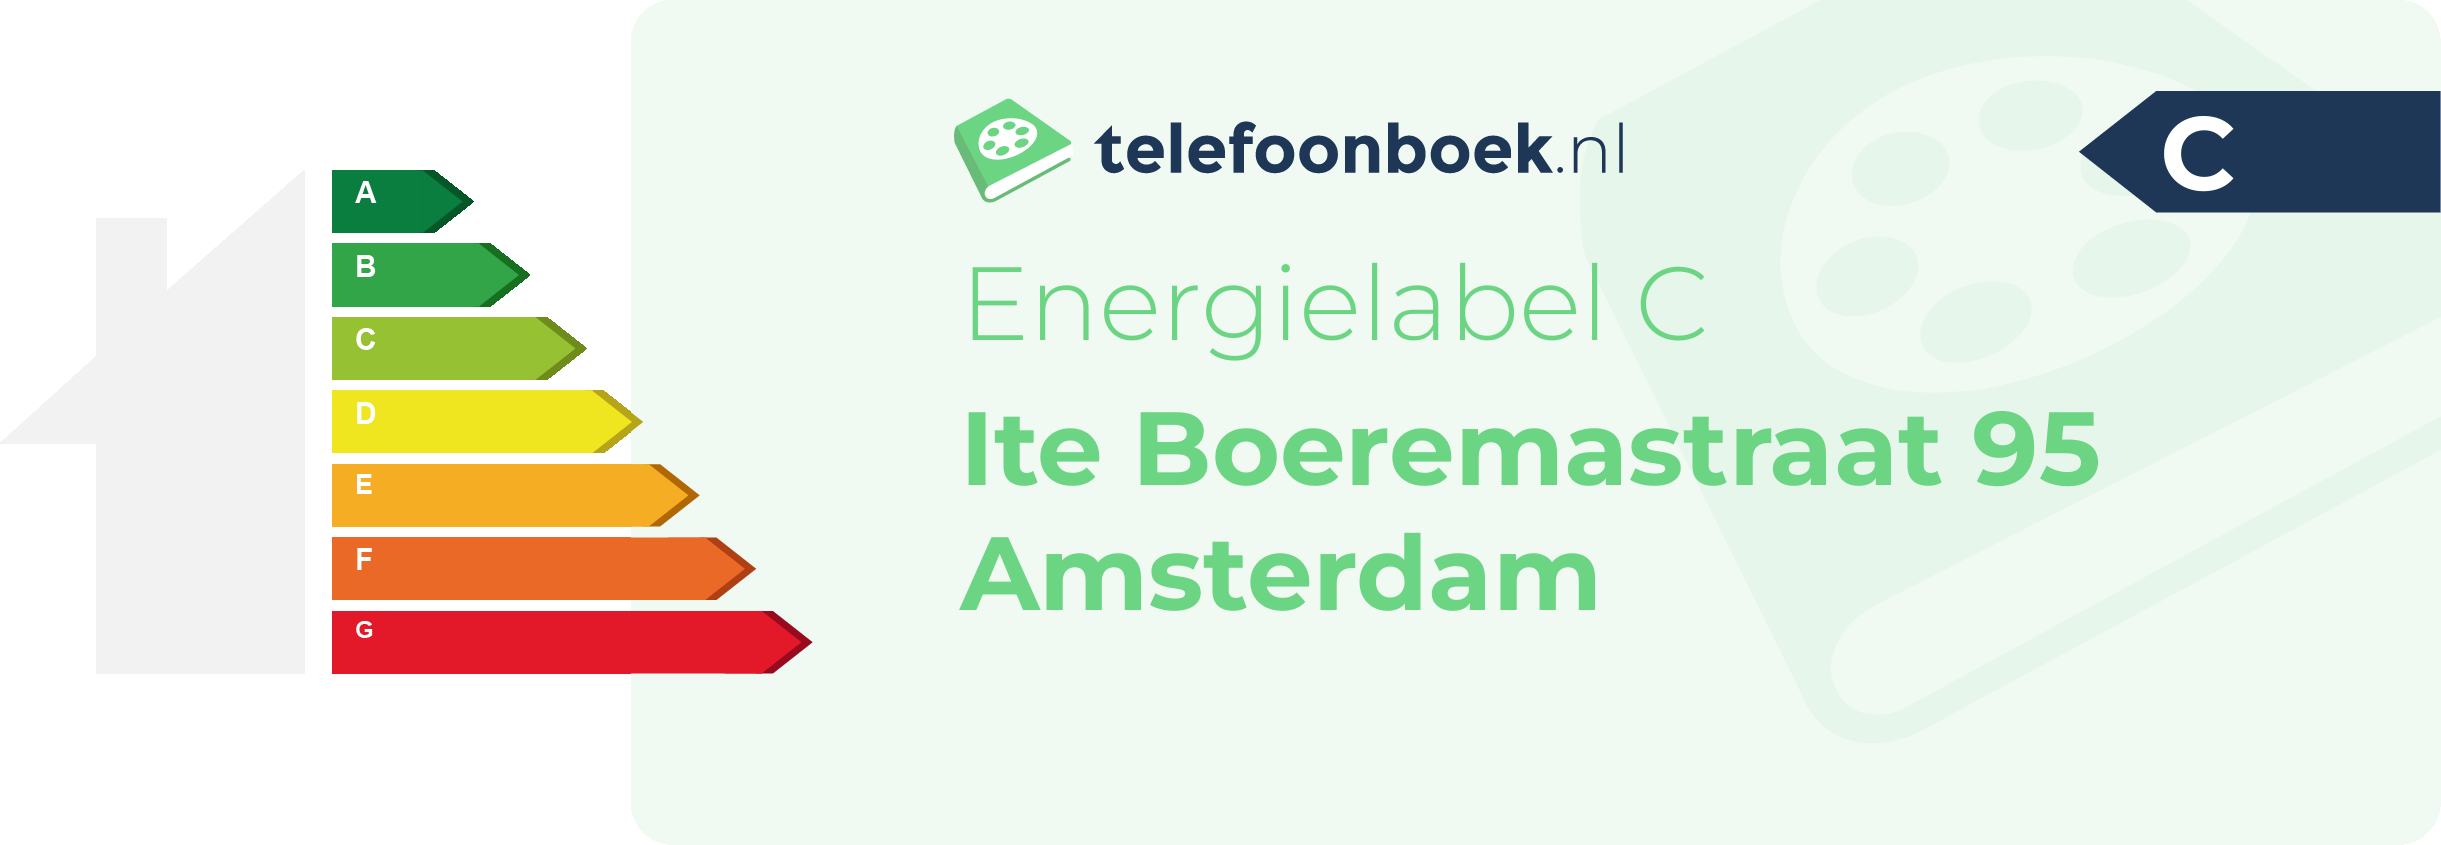 Energielabel Ite Boeremastraat 95 Amsterdam